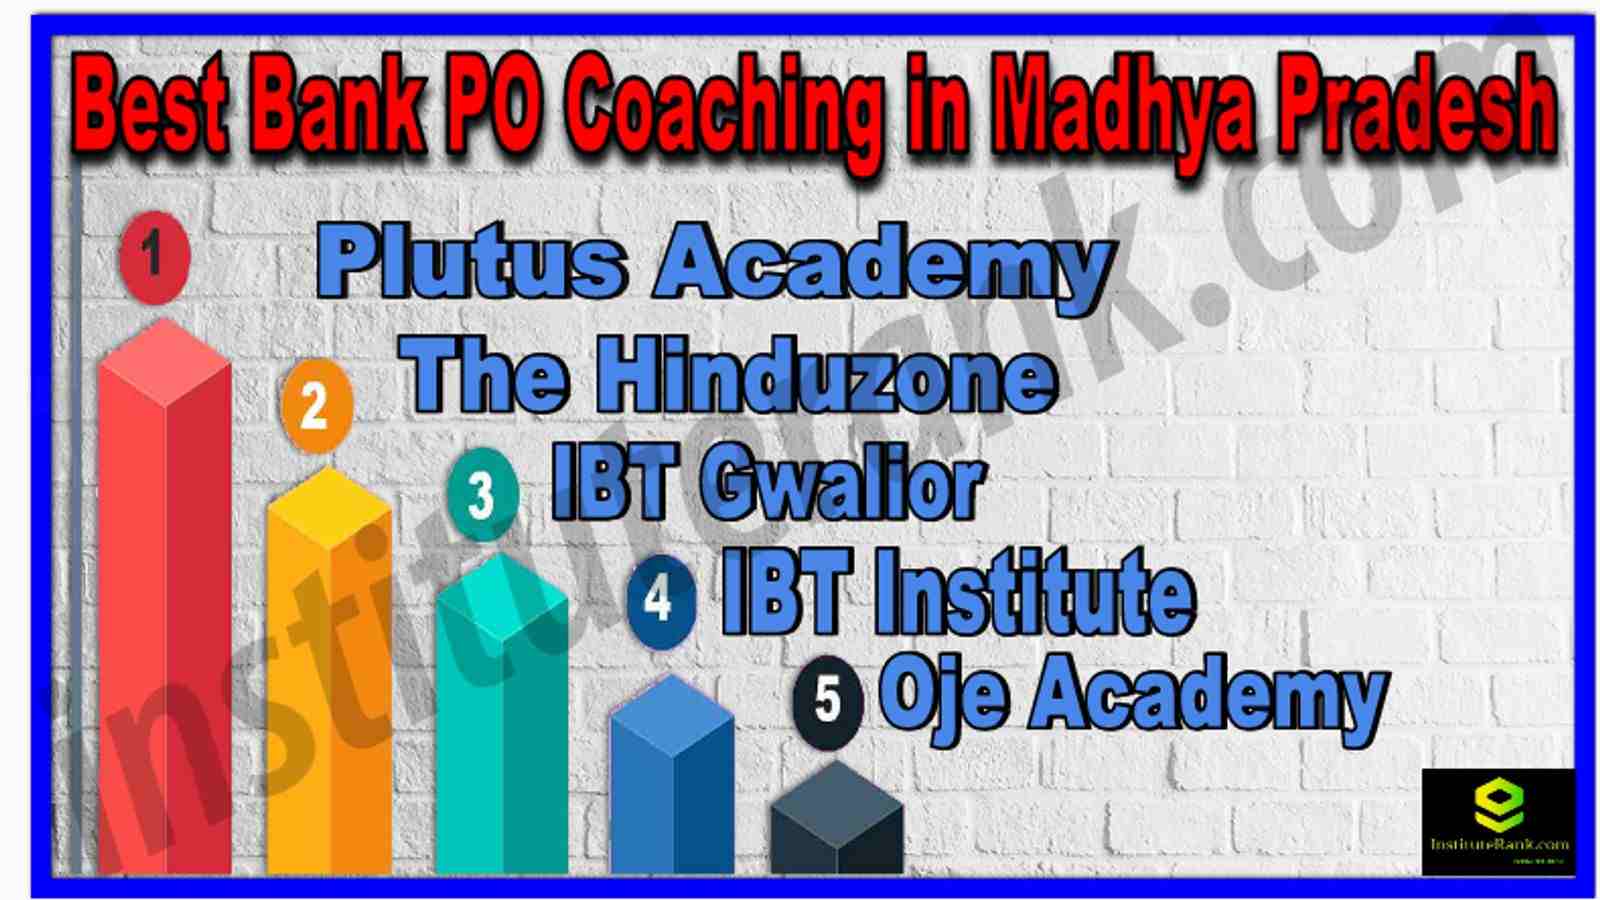 Best Bank PO Coaching in Madhya Pradesh